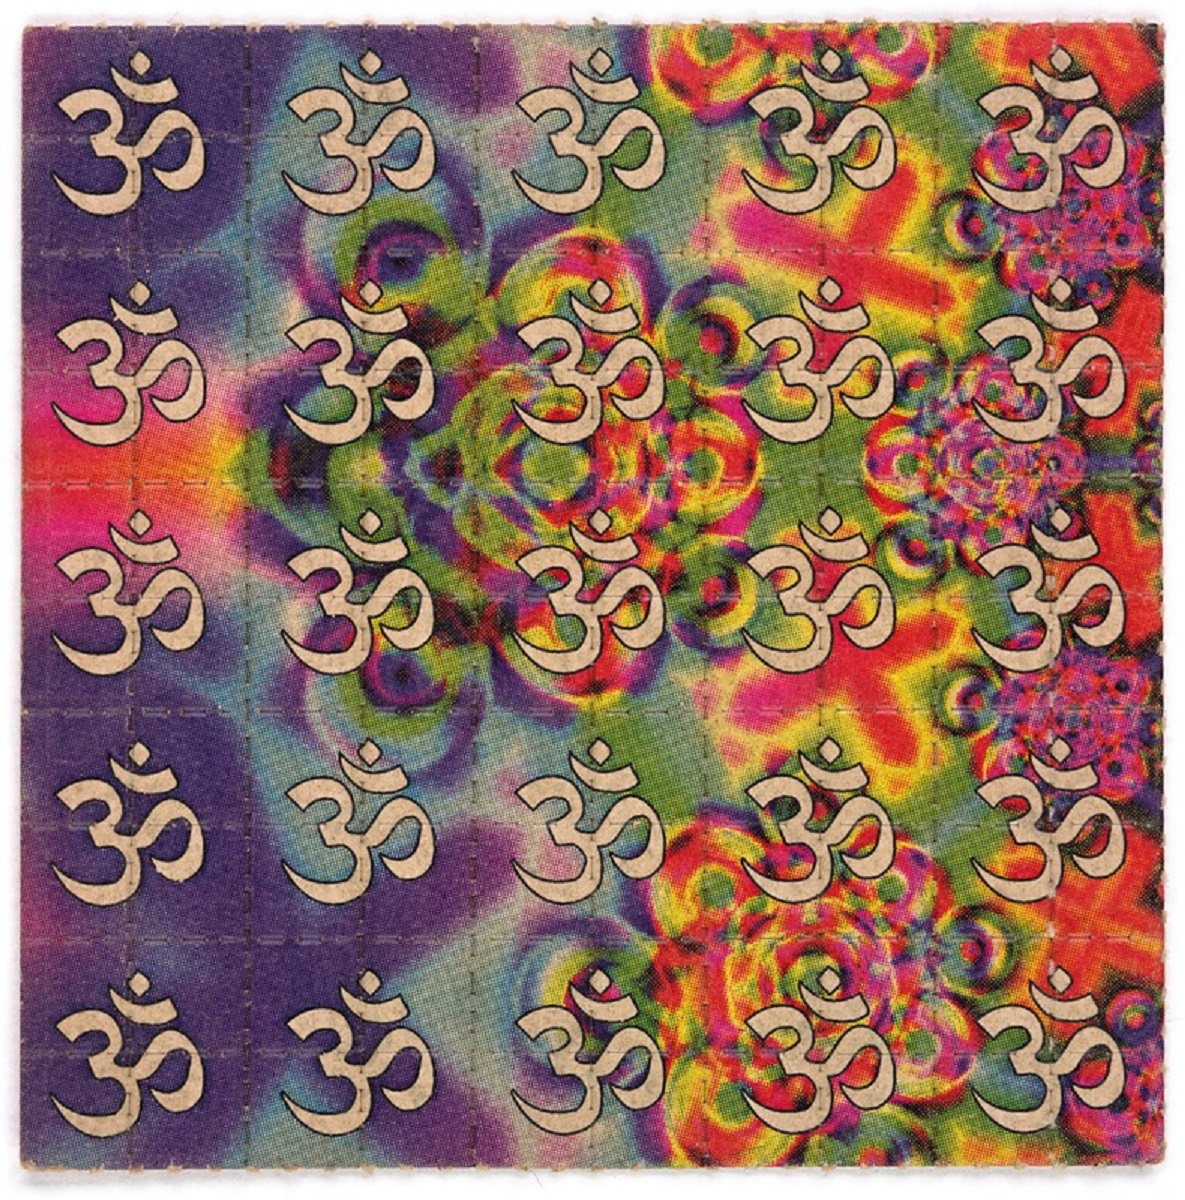 Artes nas cartelas de LSD 15